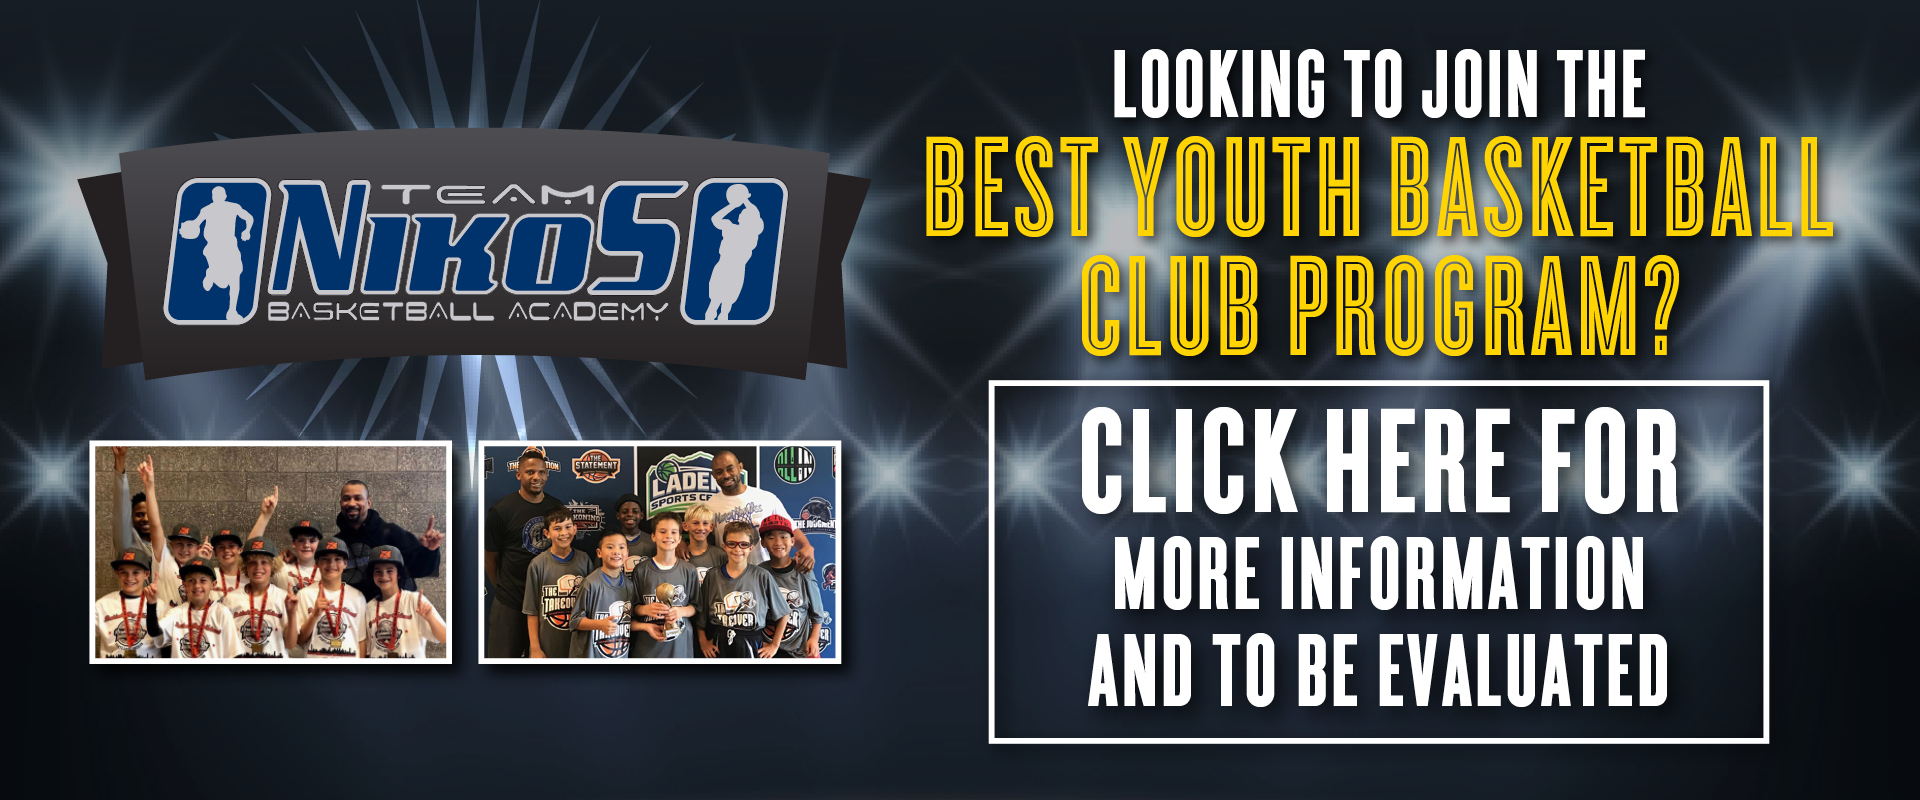 Youth Basketball Club Program